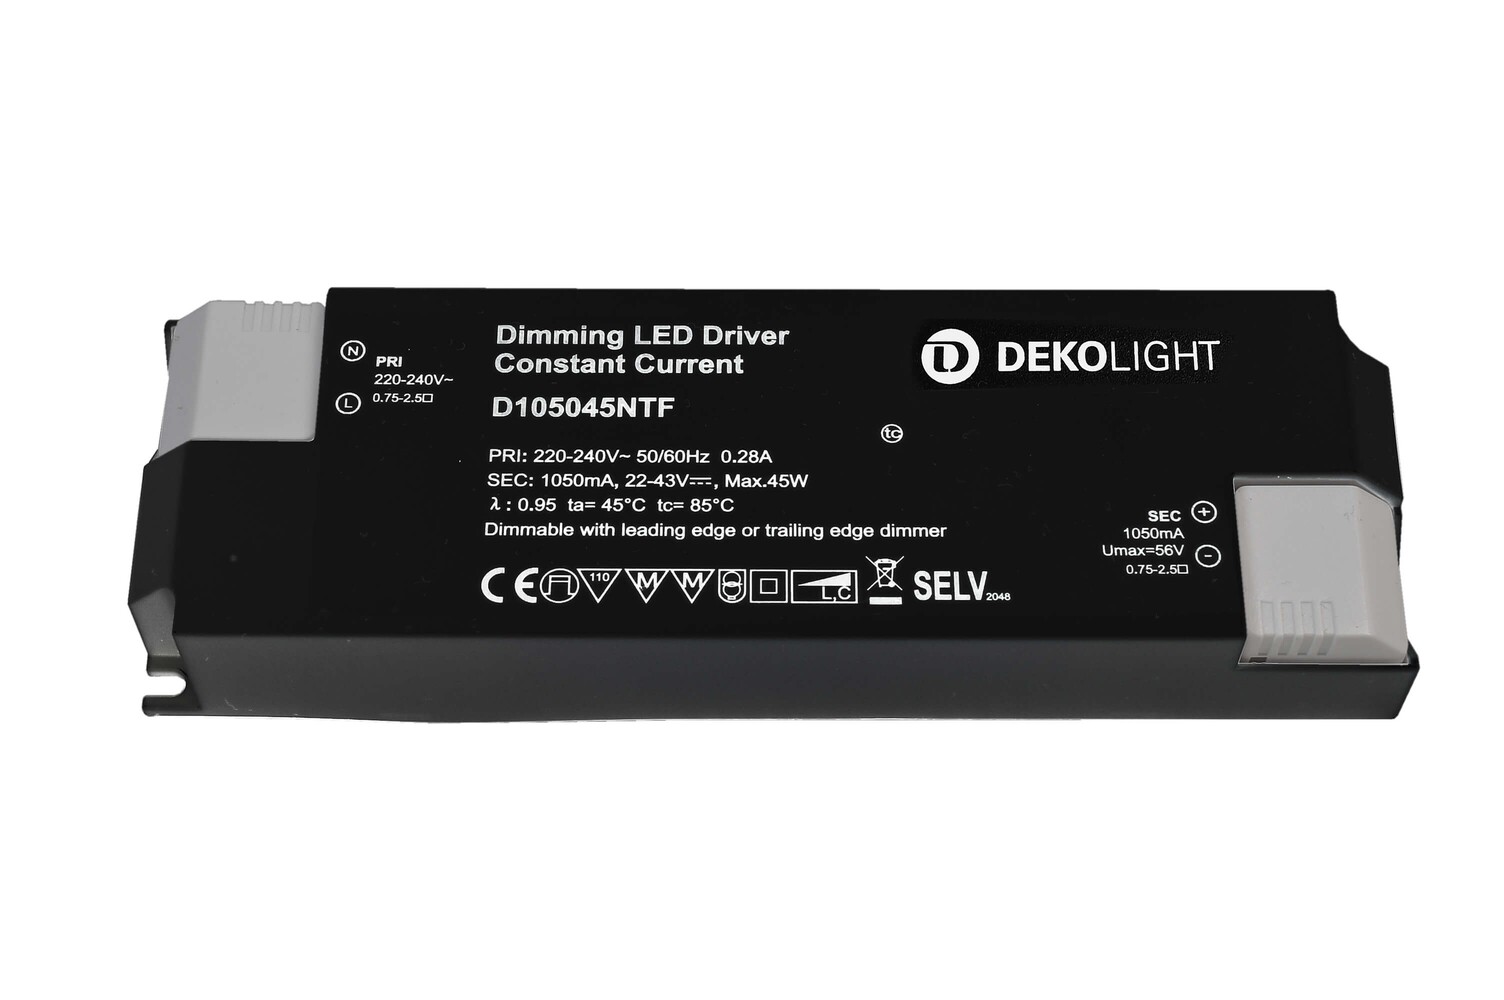 Stromkonstantes und dimmbares LED-Netzgerät von der Marke Deko-Light